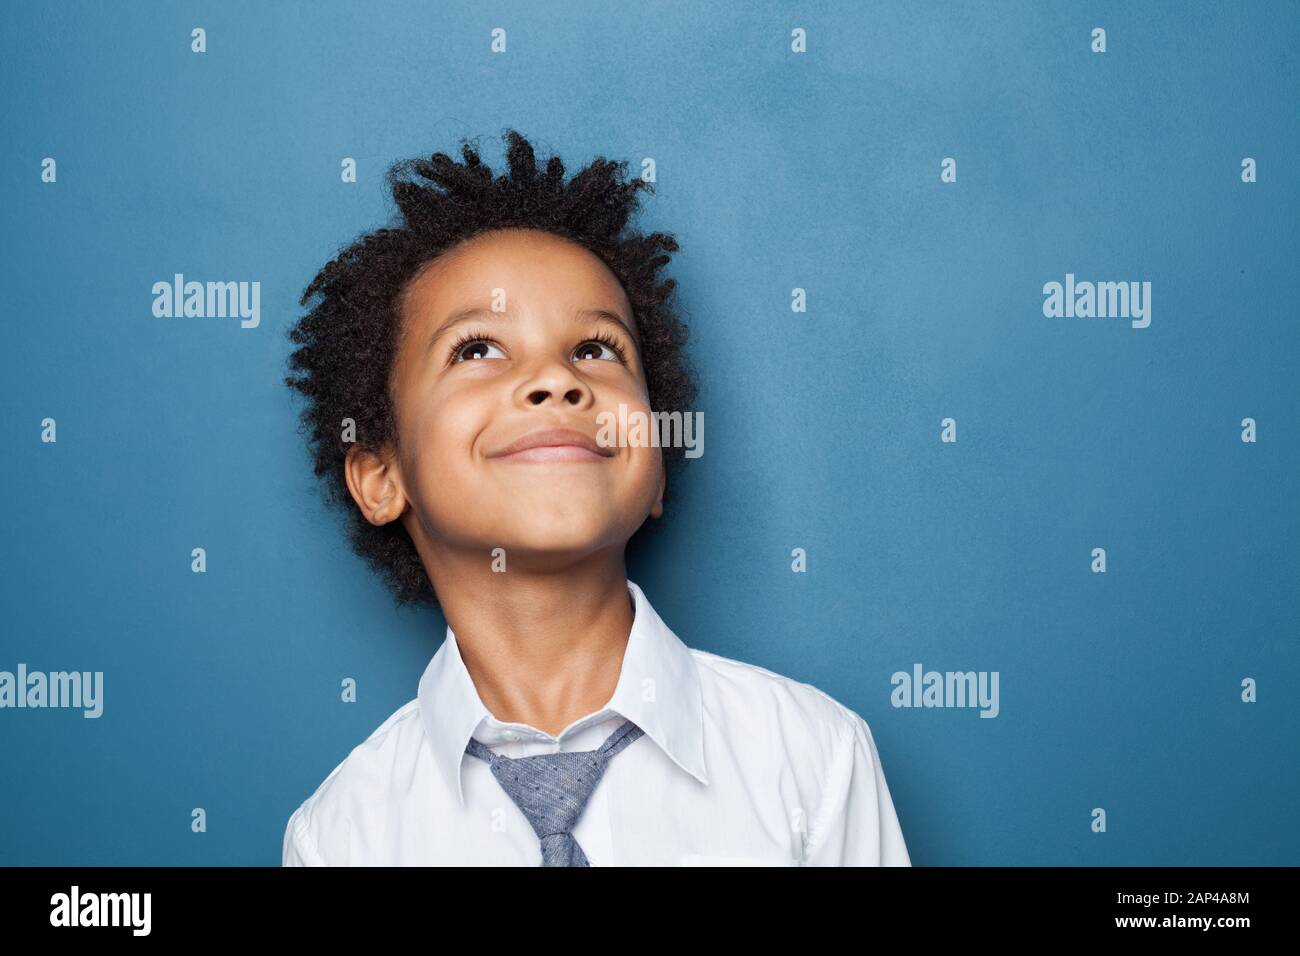 Feliz niño escuela niño retrato. Niño pequeño mirando hacia arriba sobre fondo azul Foto de stock